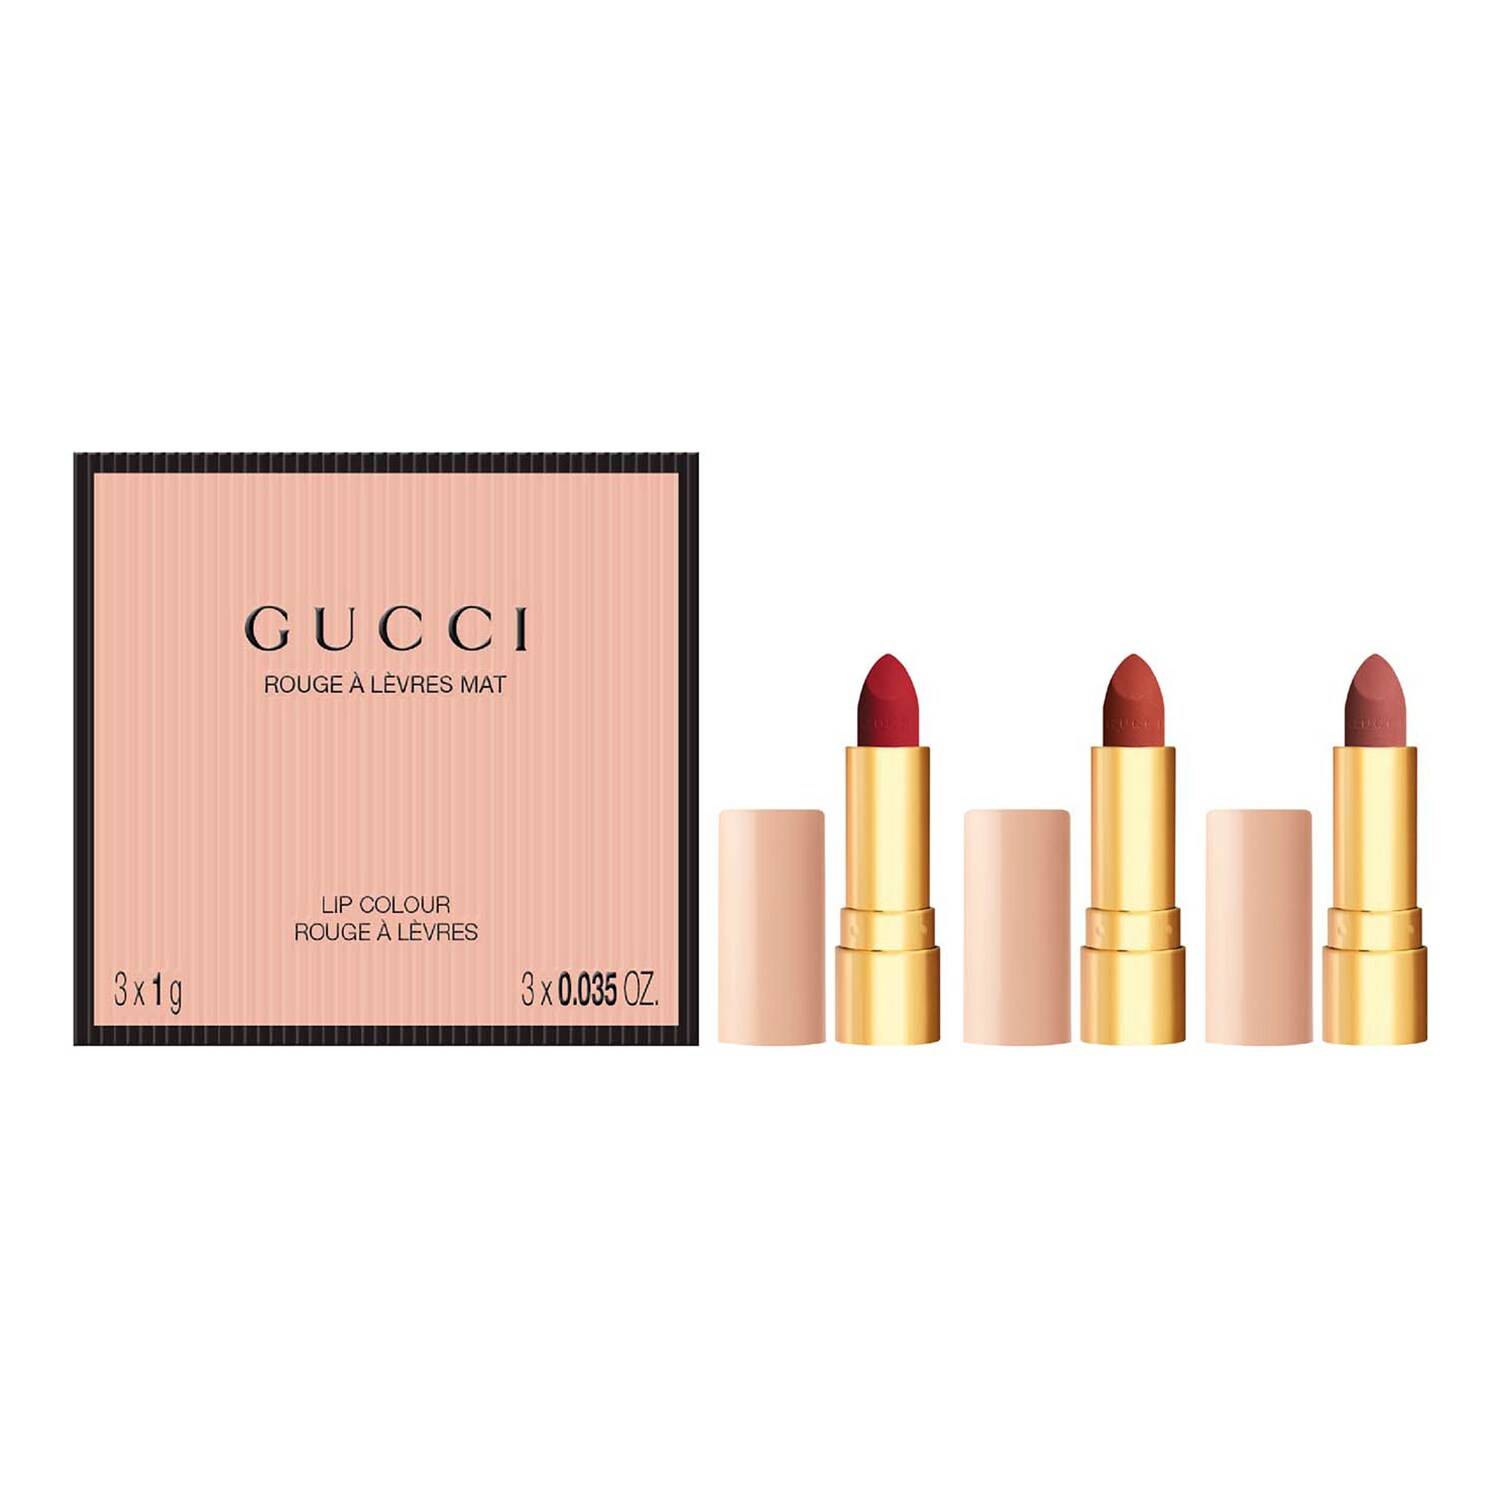 Gucci Trio Mini Matte Lipstick Giftset - Sephora Exclusive Giftset